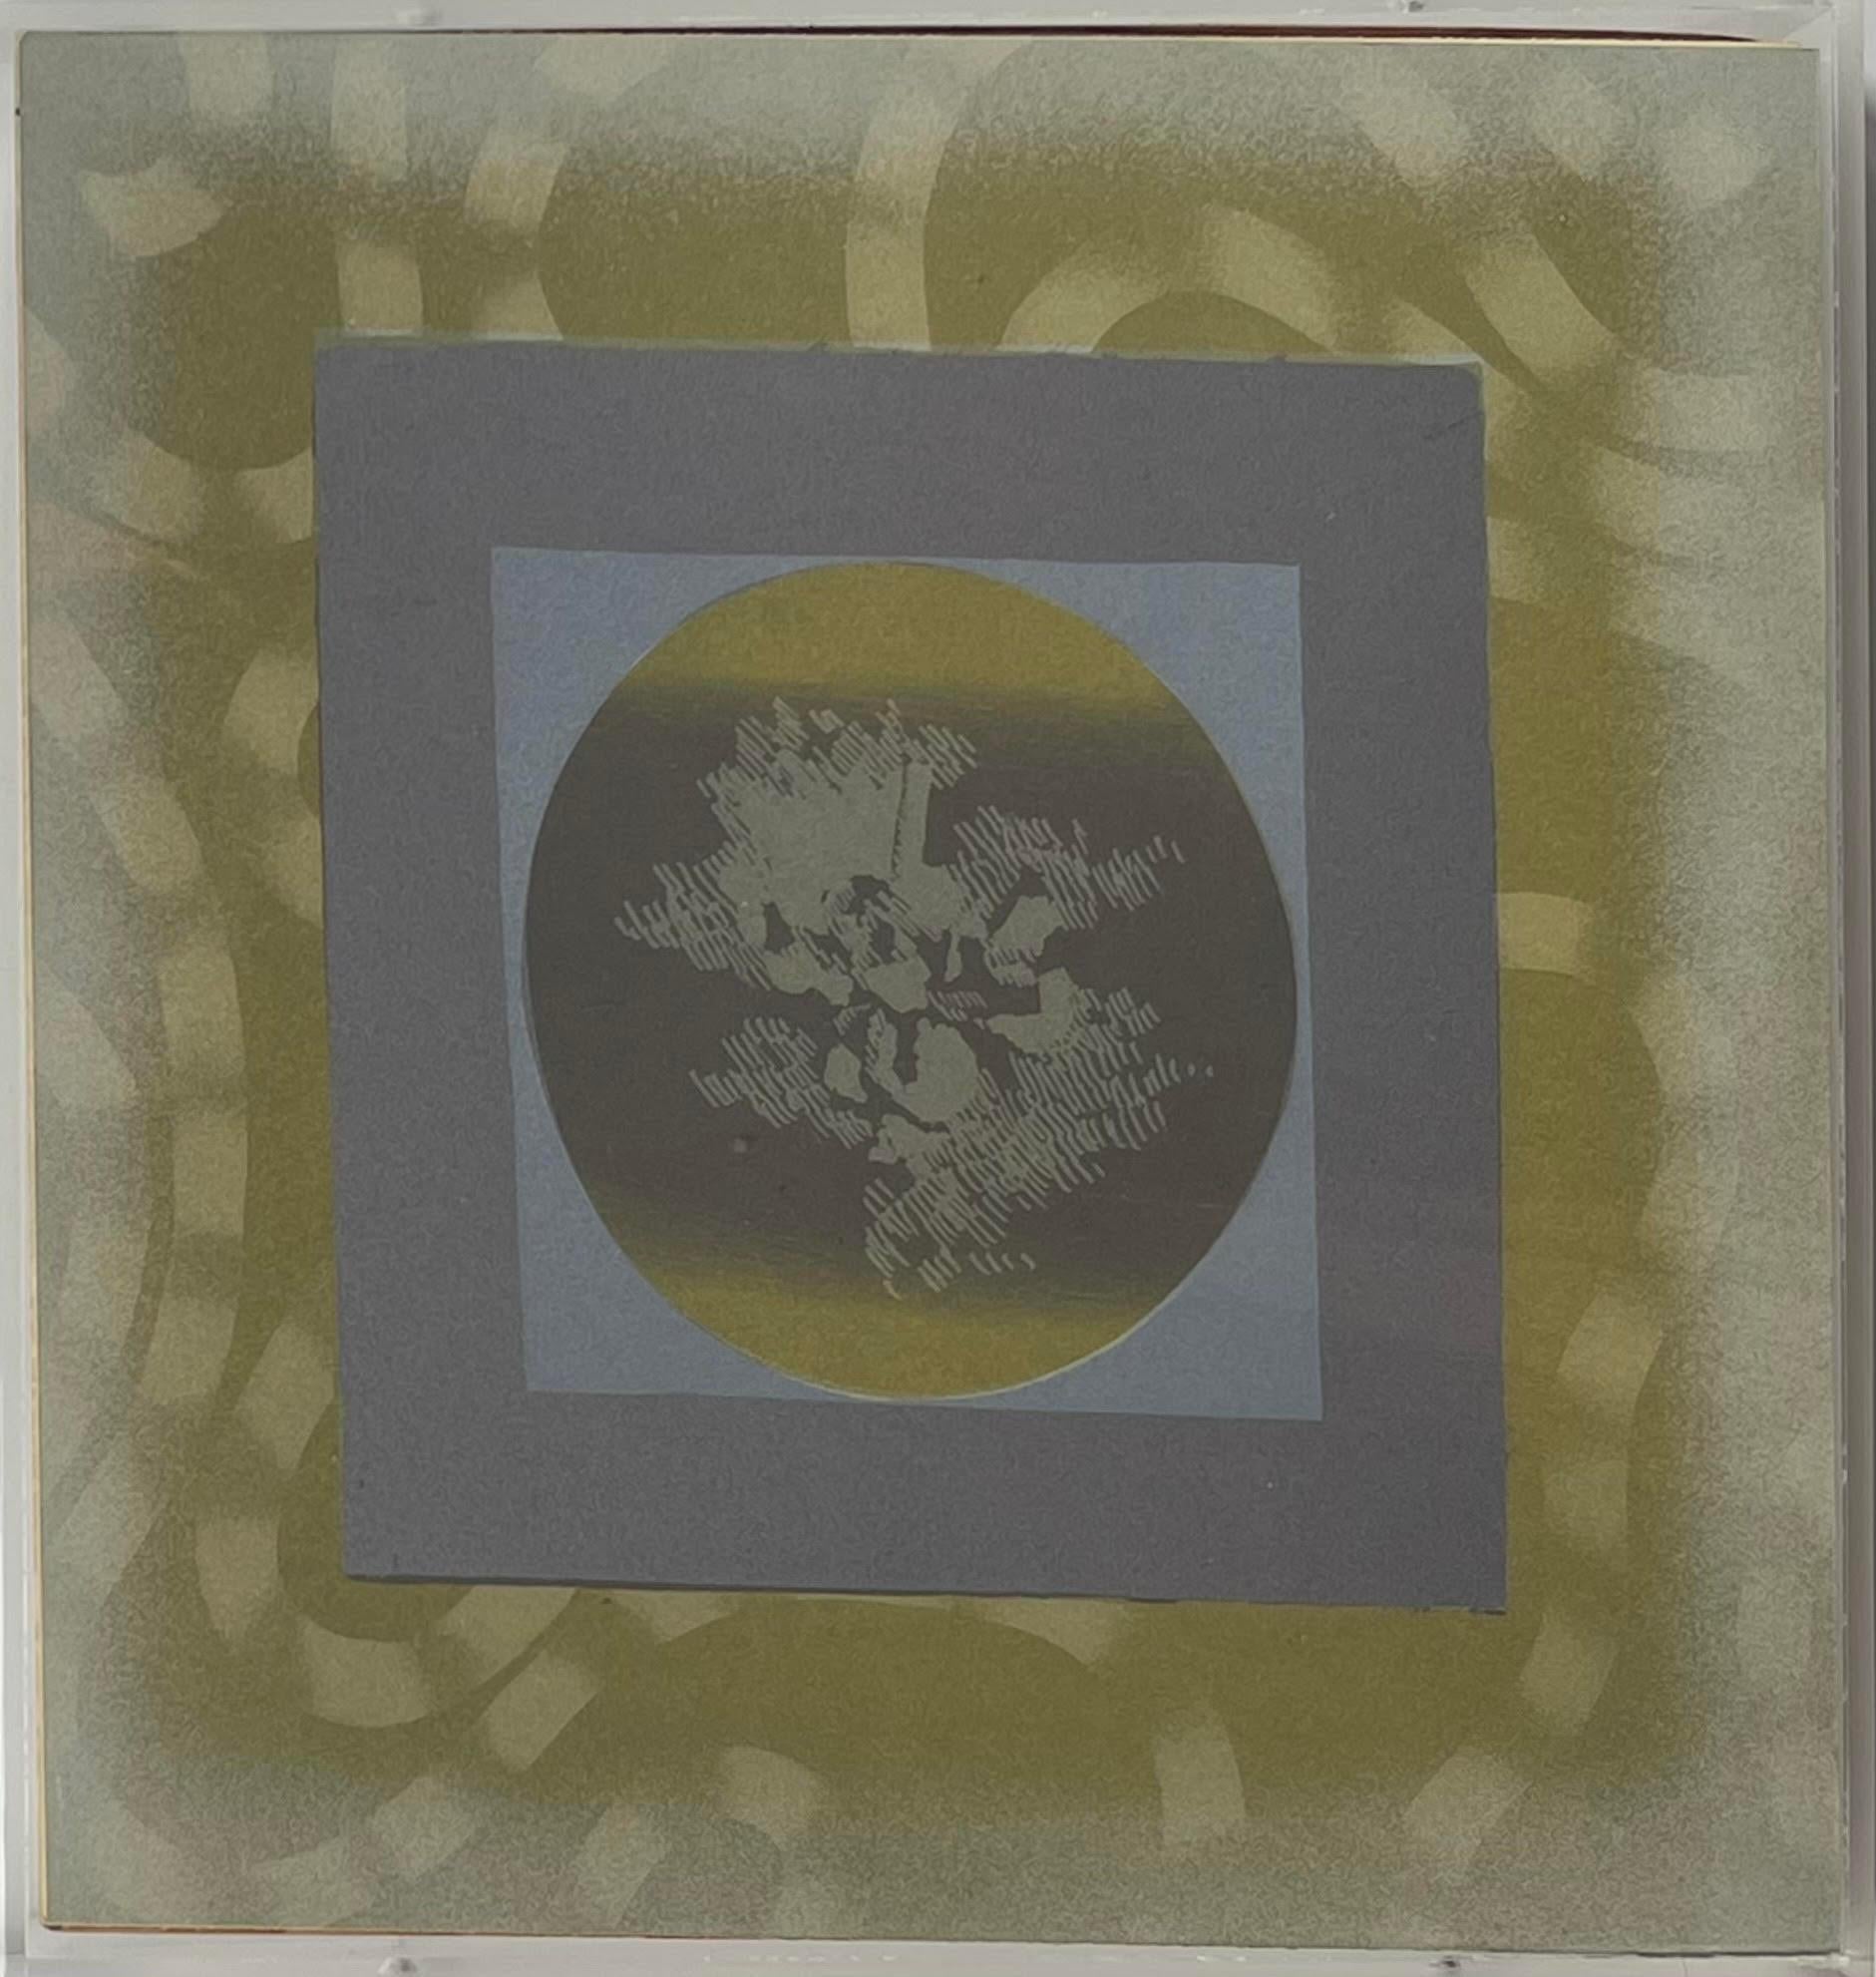 Billy Al Bengston
Kakadu AAA Dracula, 1968
Lithographie, Zink und Aluminium, in Silberviolett, Gelb, zwei Grautönen und Orange auf unkalandriertem Rives-Papier
Inklusive Rahmen
auf der Vorderseite schwach signiert (persönlich sichtbar) und